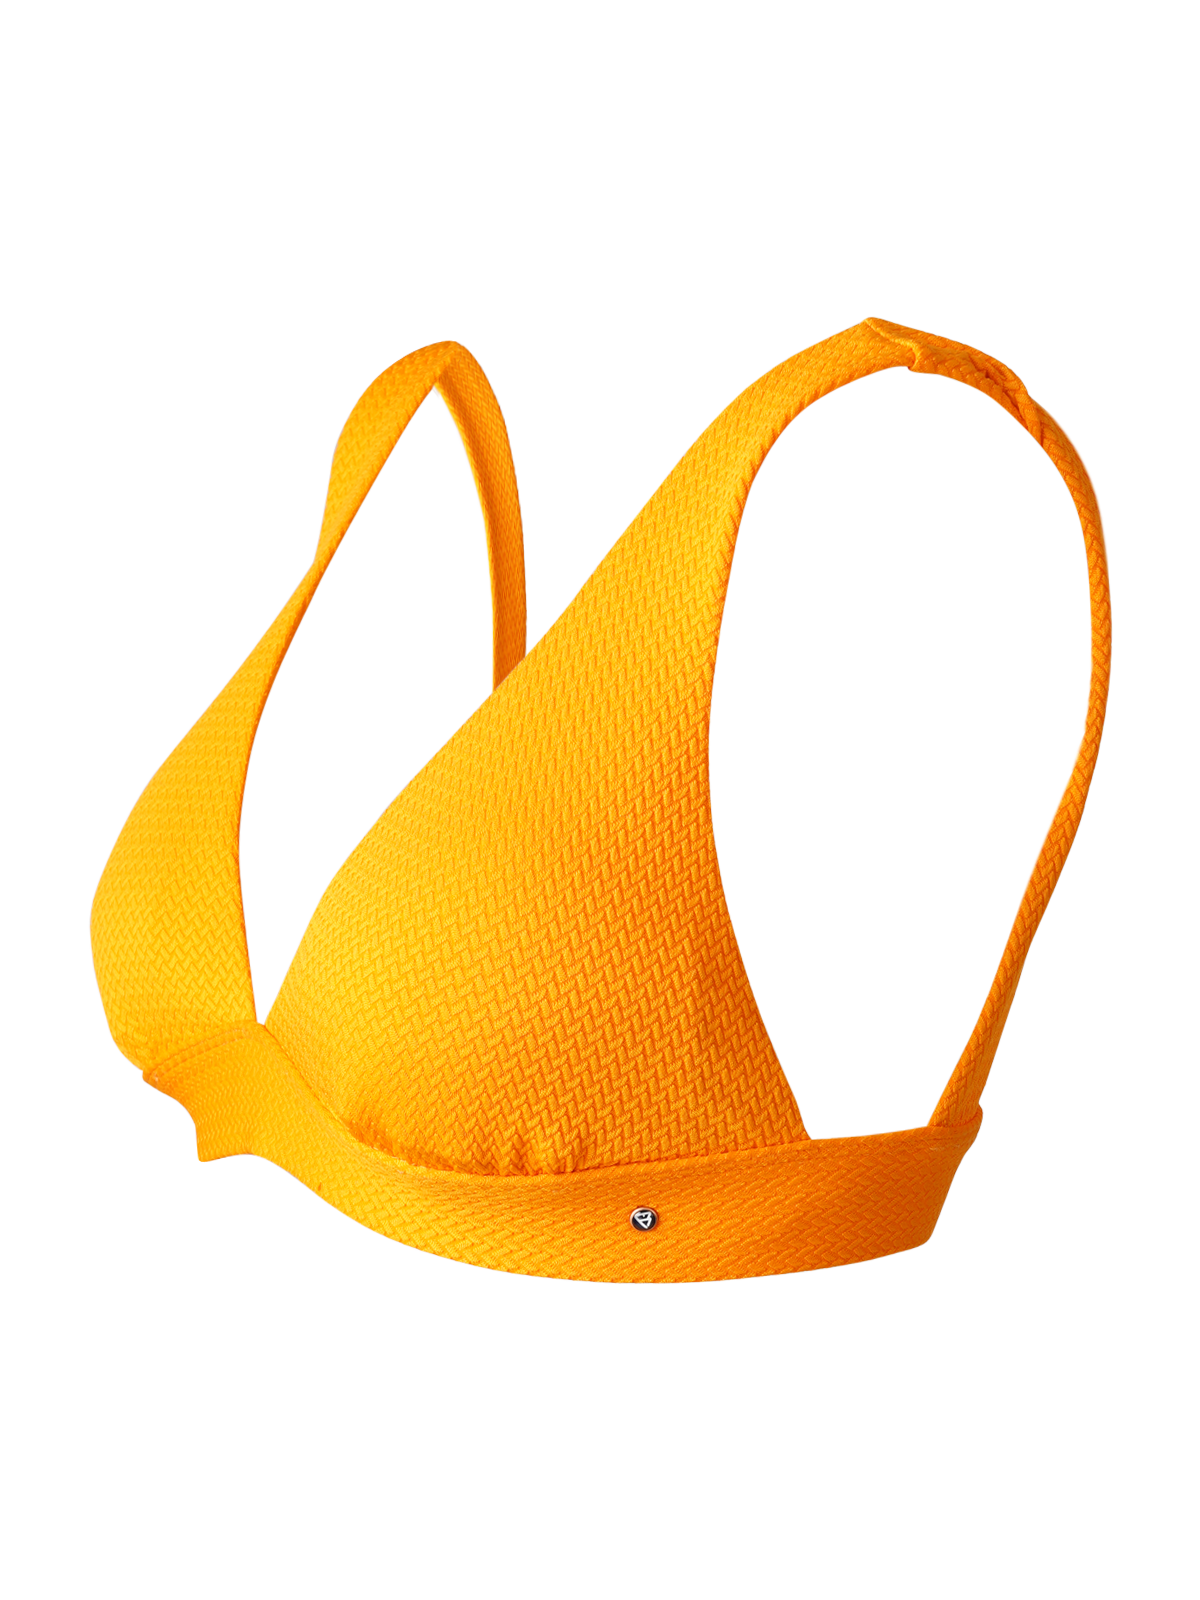 Forte-STR Damen Bralette Bikini Top | Orange